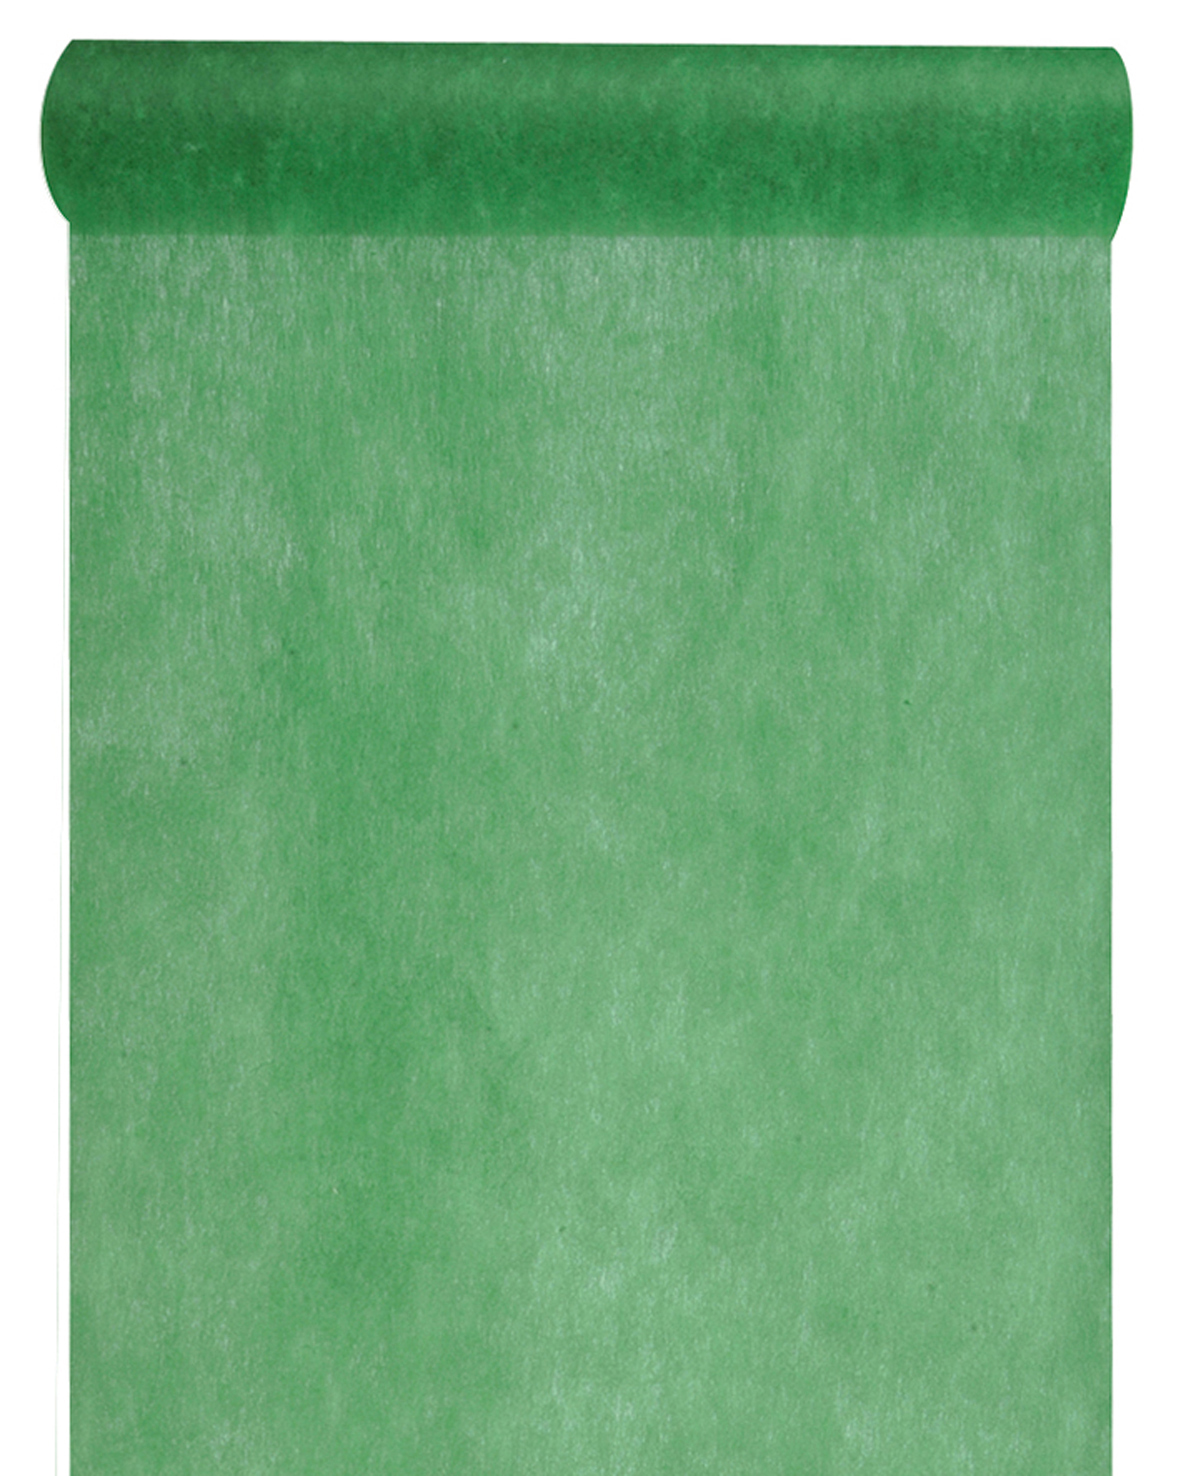 Vlies-Tischläufer BUDGET, dunkelgrün, 60 cm breit, 10 m Rolle - vlies-tischlaeufer, dekovlies-budget